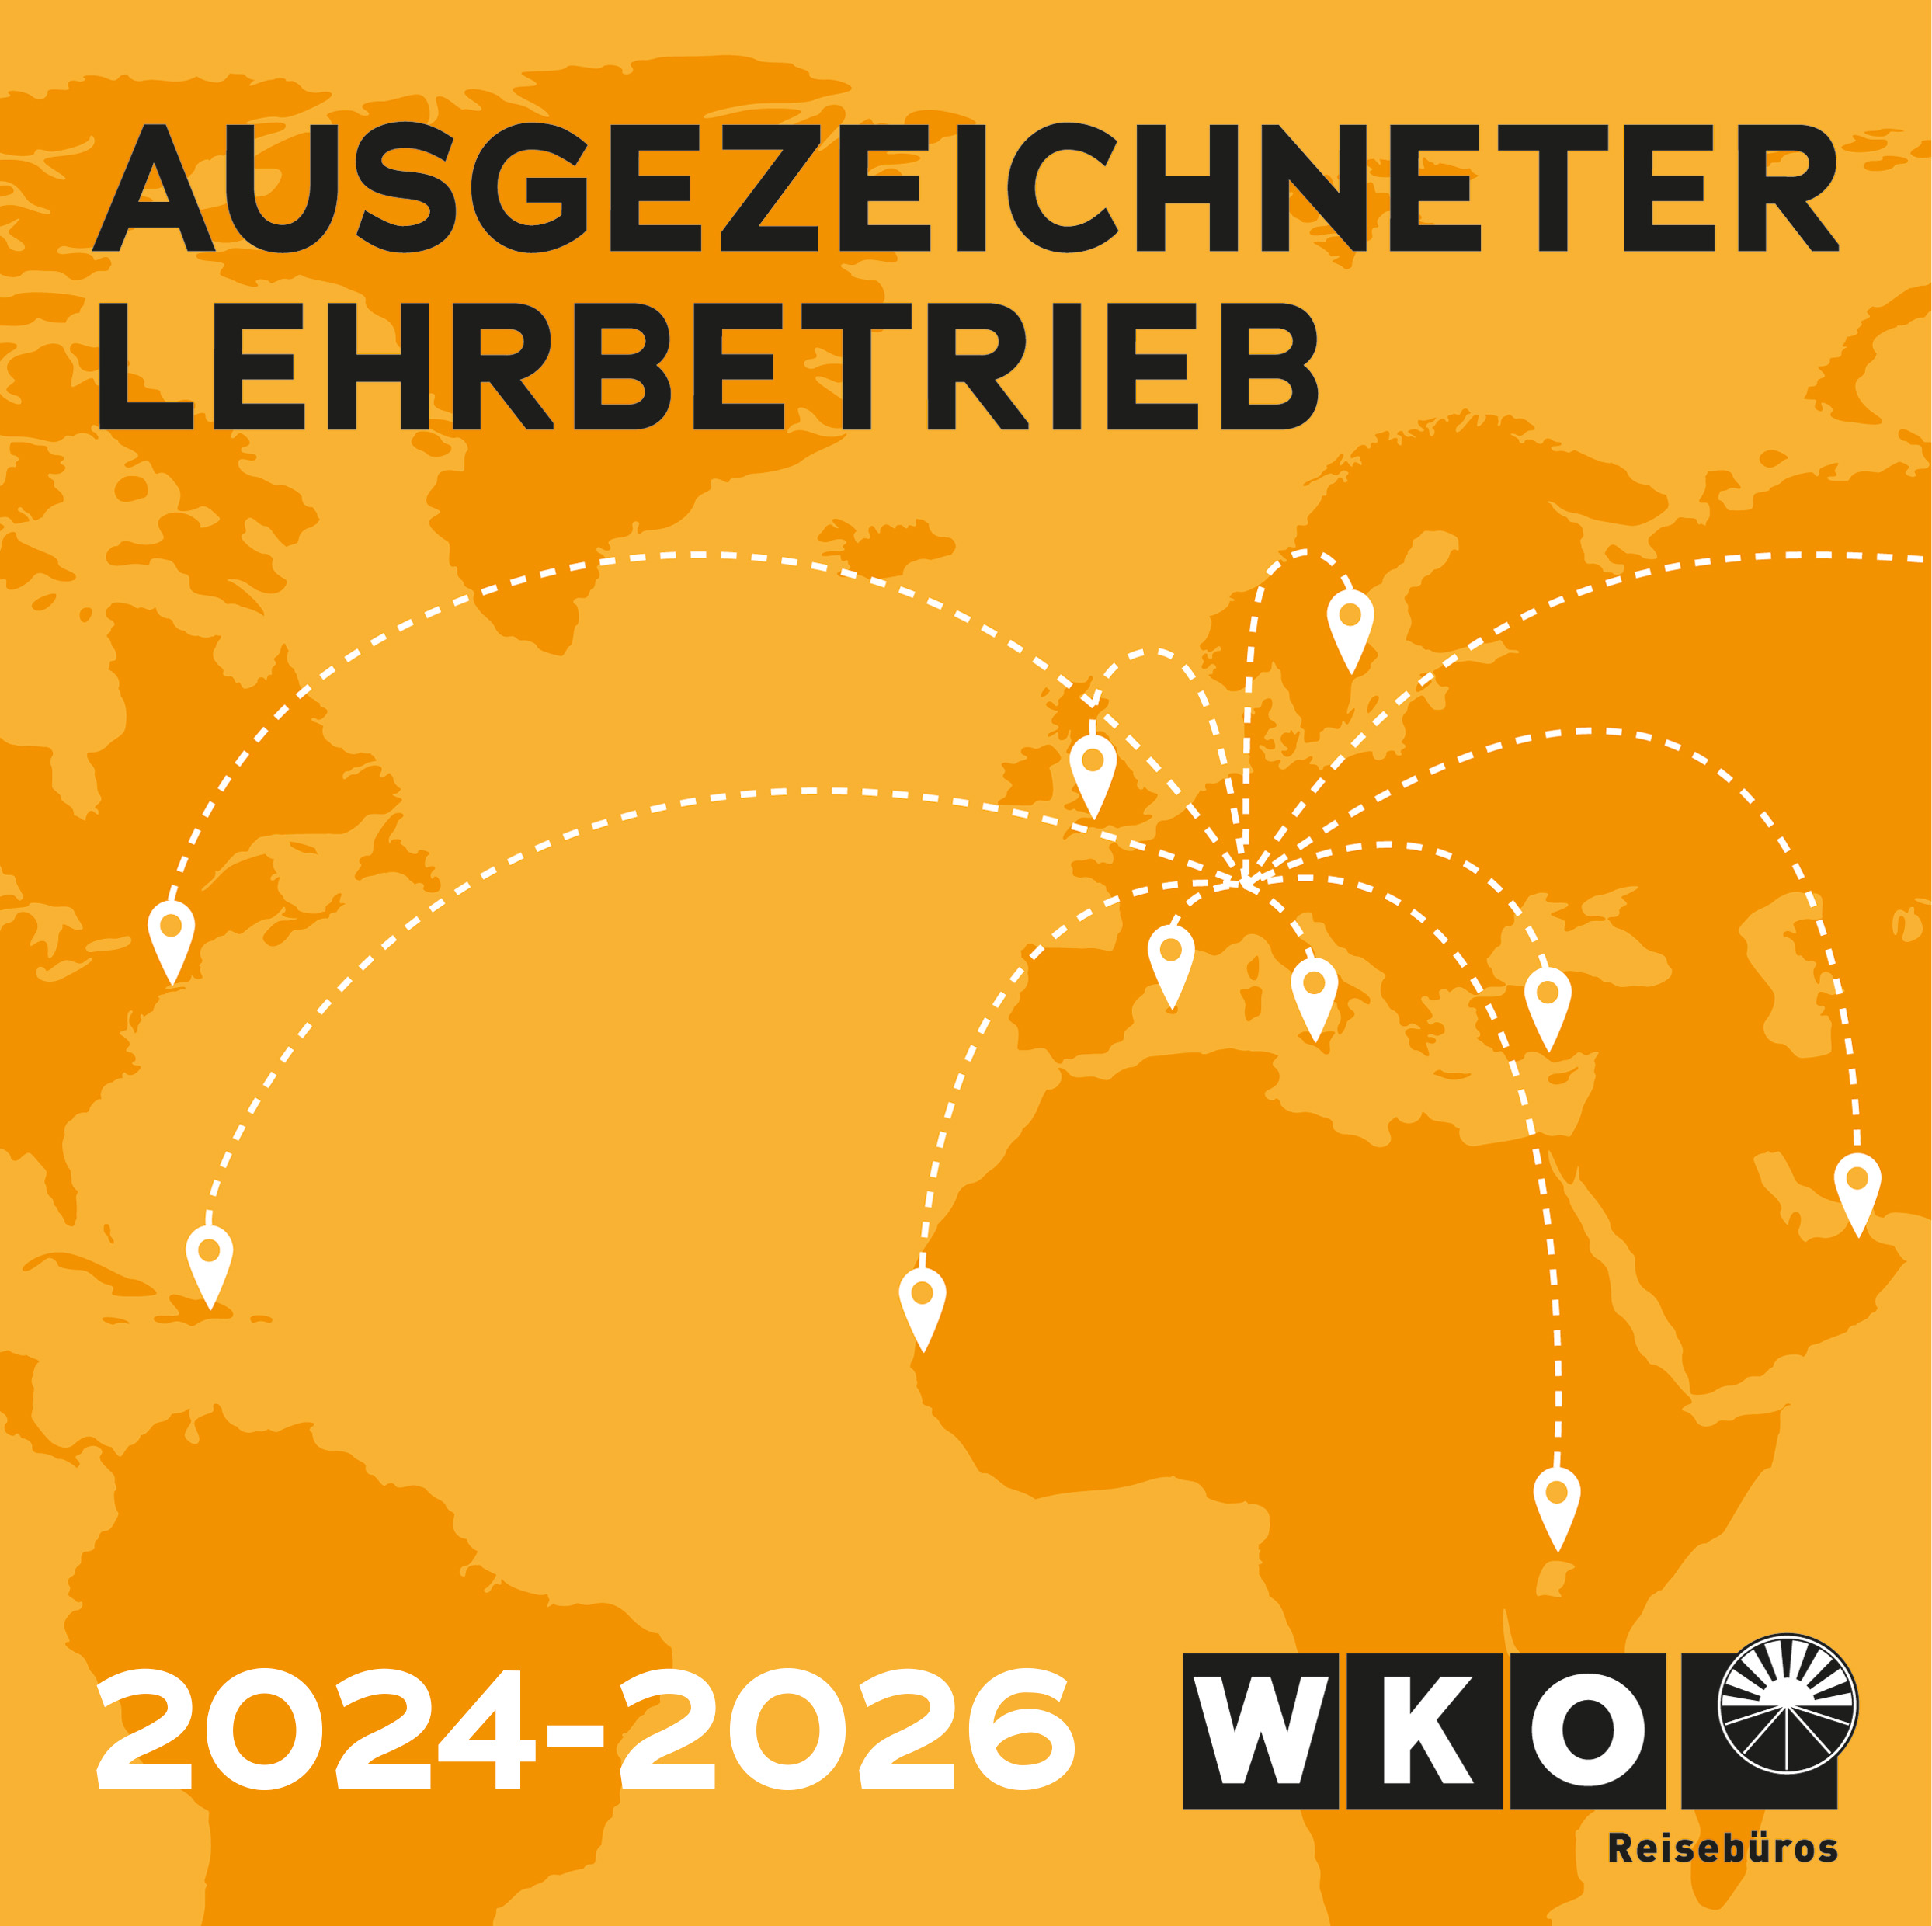 Gütesiegel ausgezeichneter Lehrbetrieb WKO 2024 - 2026